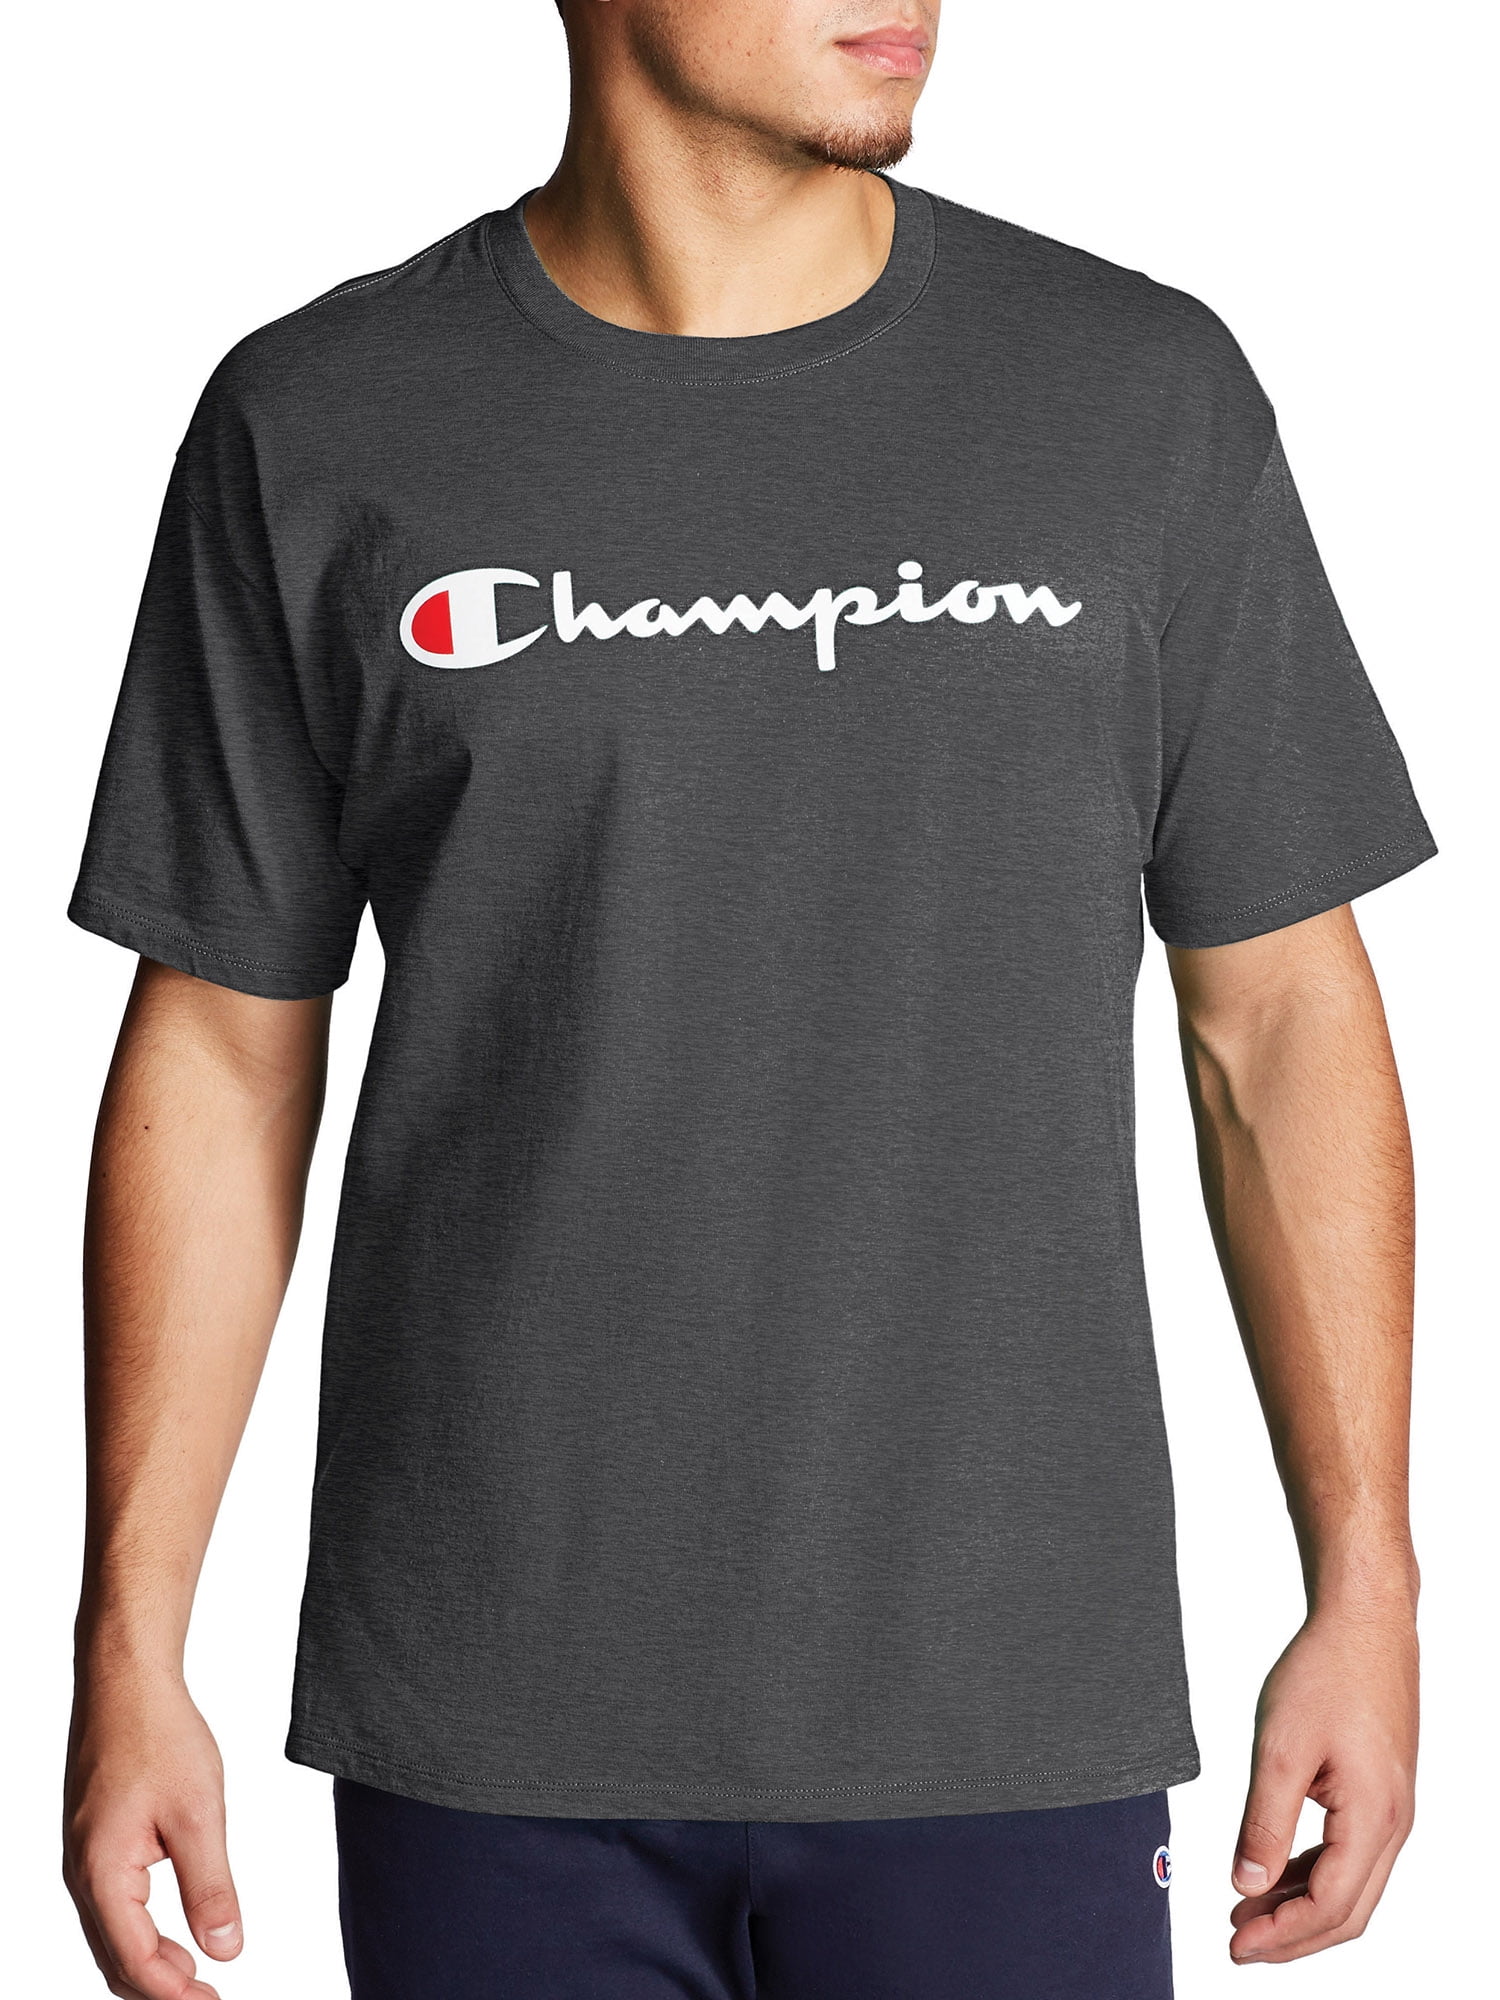 Champion Mens Tops - Walmart.com